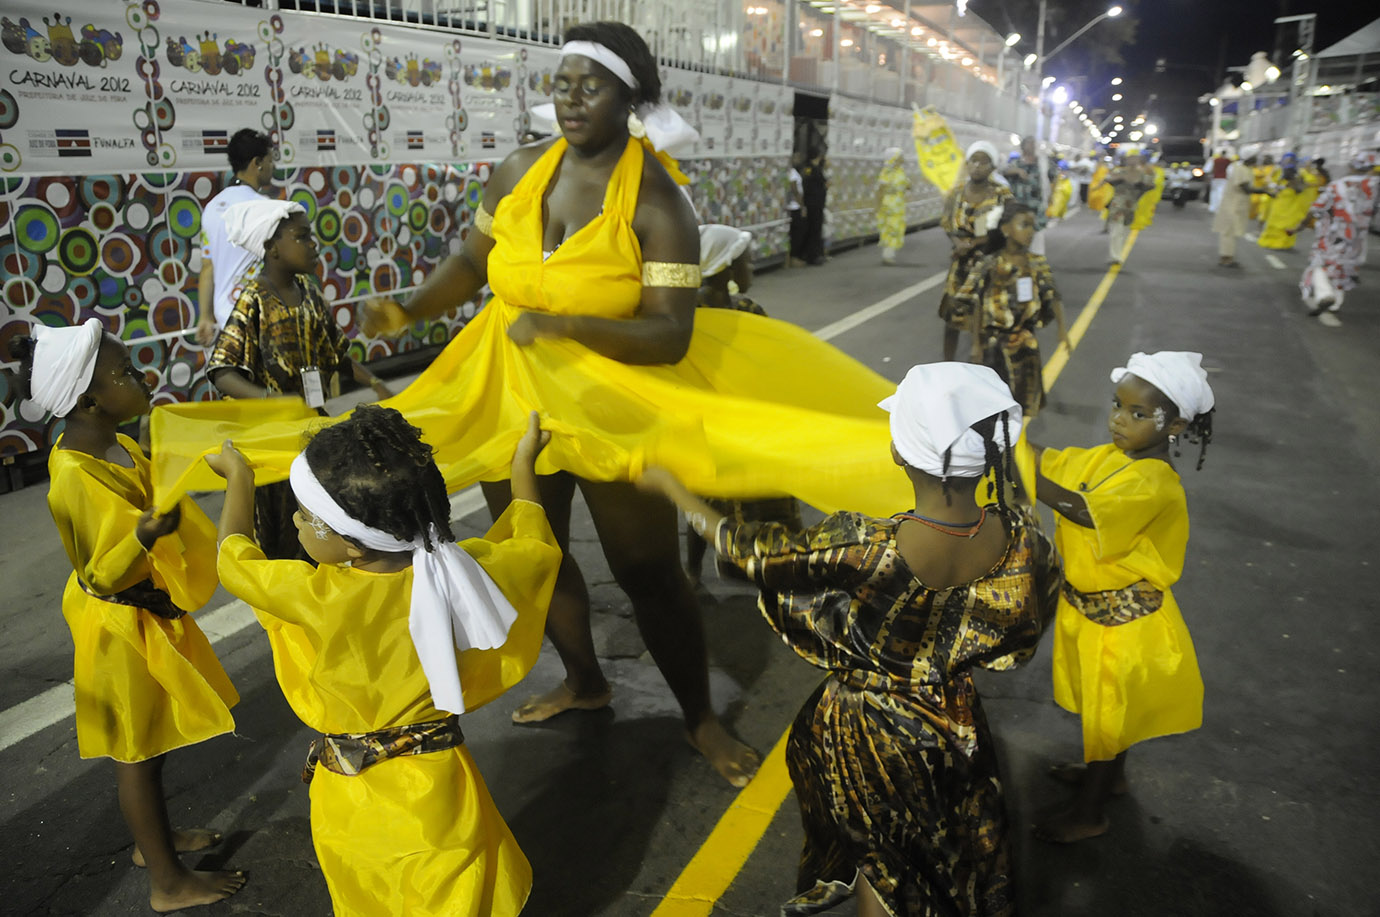 Portal de Notcias PJF | Carnaval 2015 - Cortejo de afoxs reafirma valores da cultura afro-brasileira   | FUNALFA - 28/1/2015